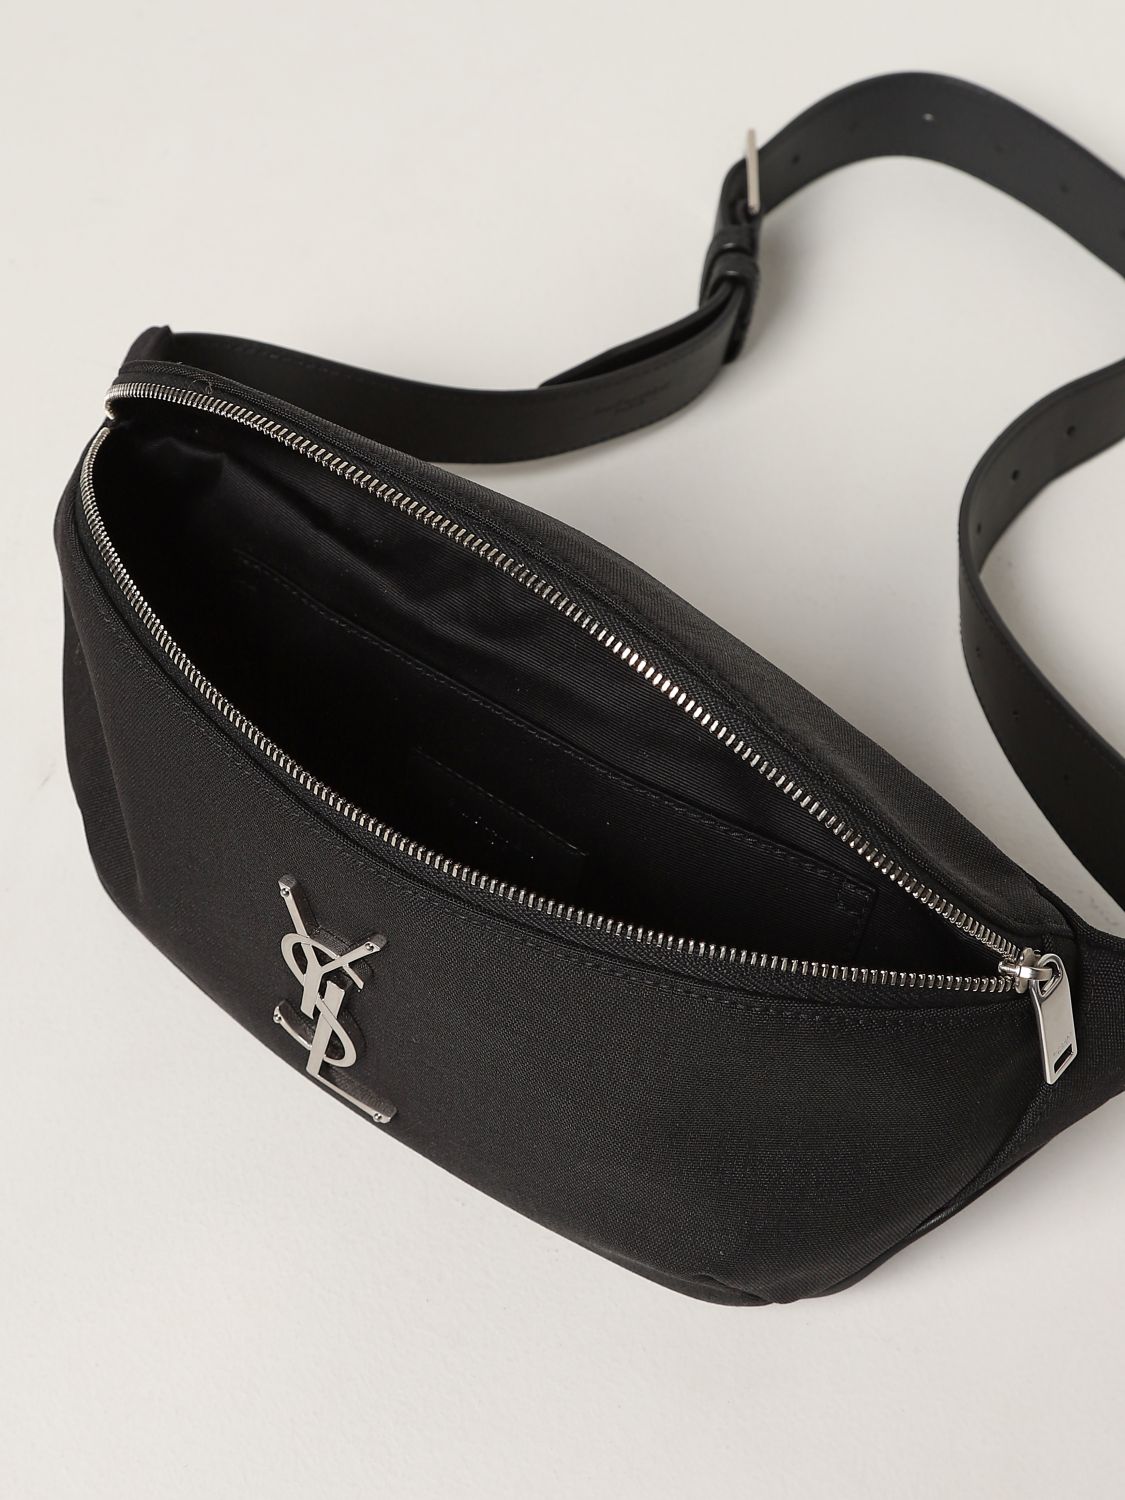 SAINT LAURENT: Classic Monogram canvas belt bag - Black  Saint Laurent  belt bag 590076GIV6E online at